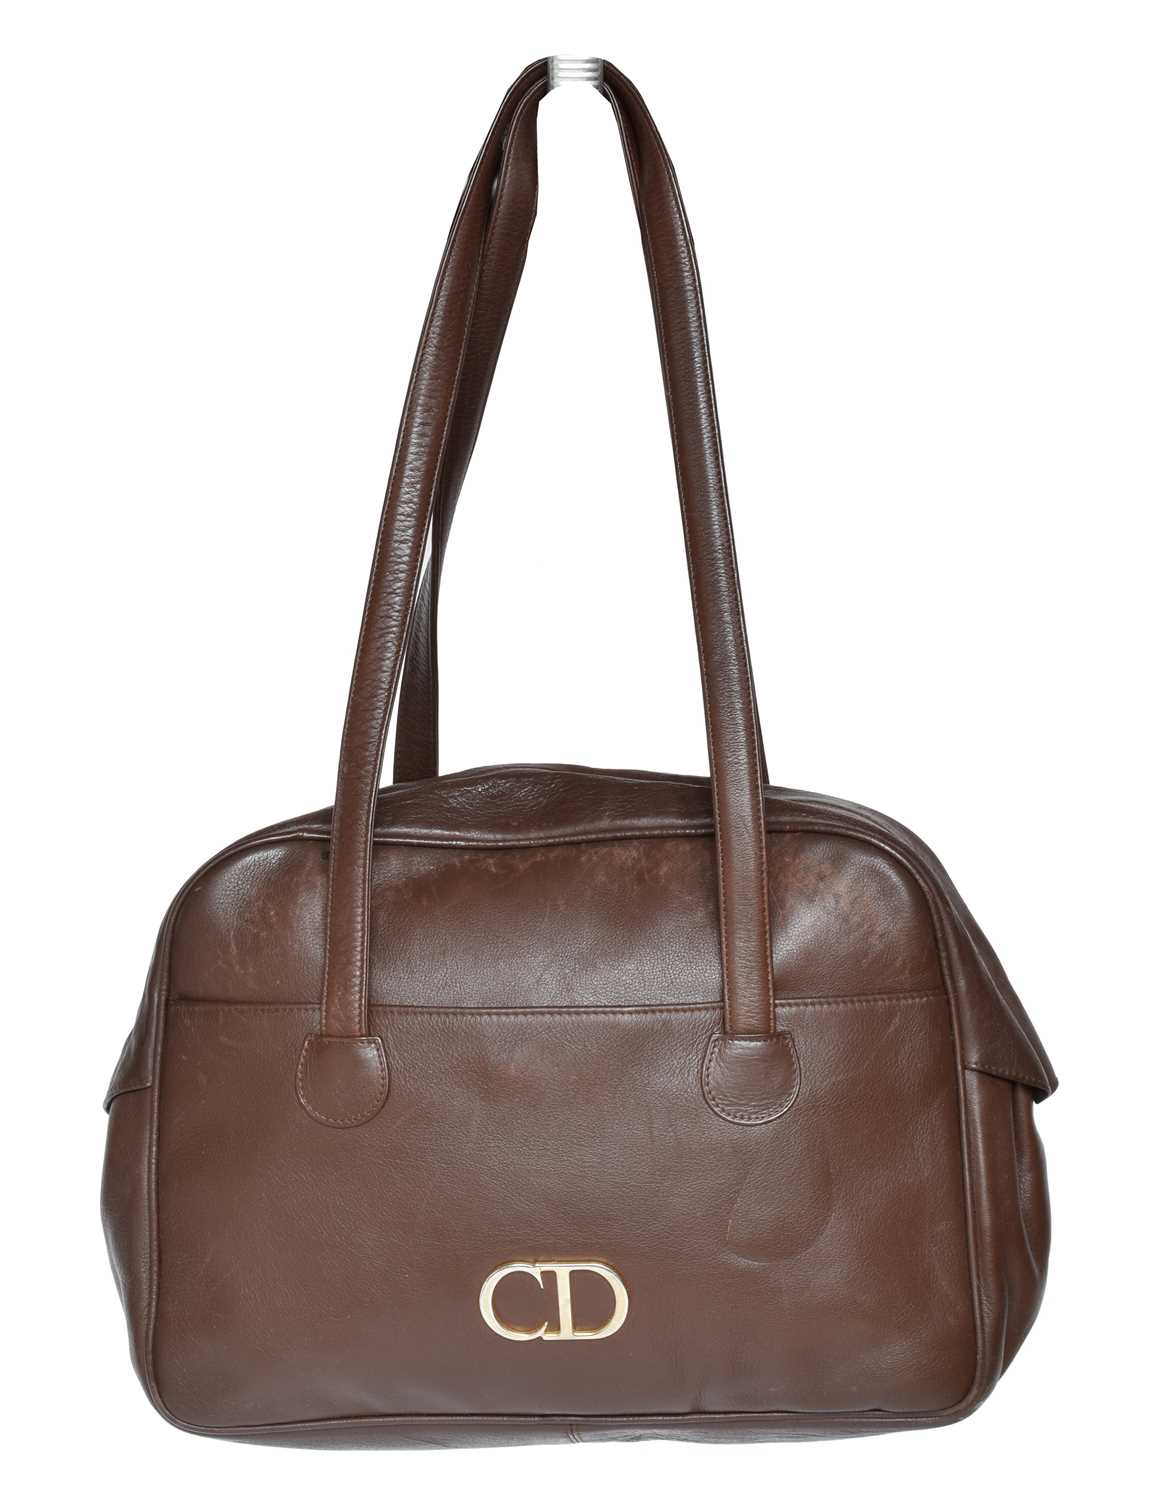 Lot 126 - A Christian Dior vintage bag